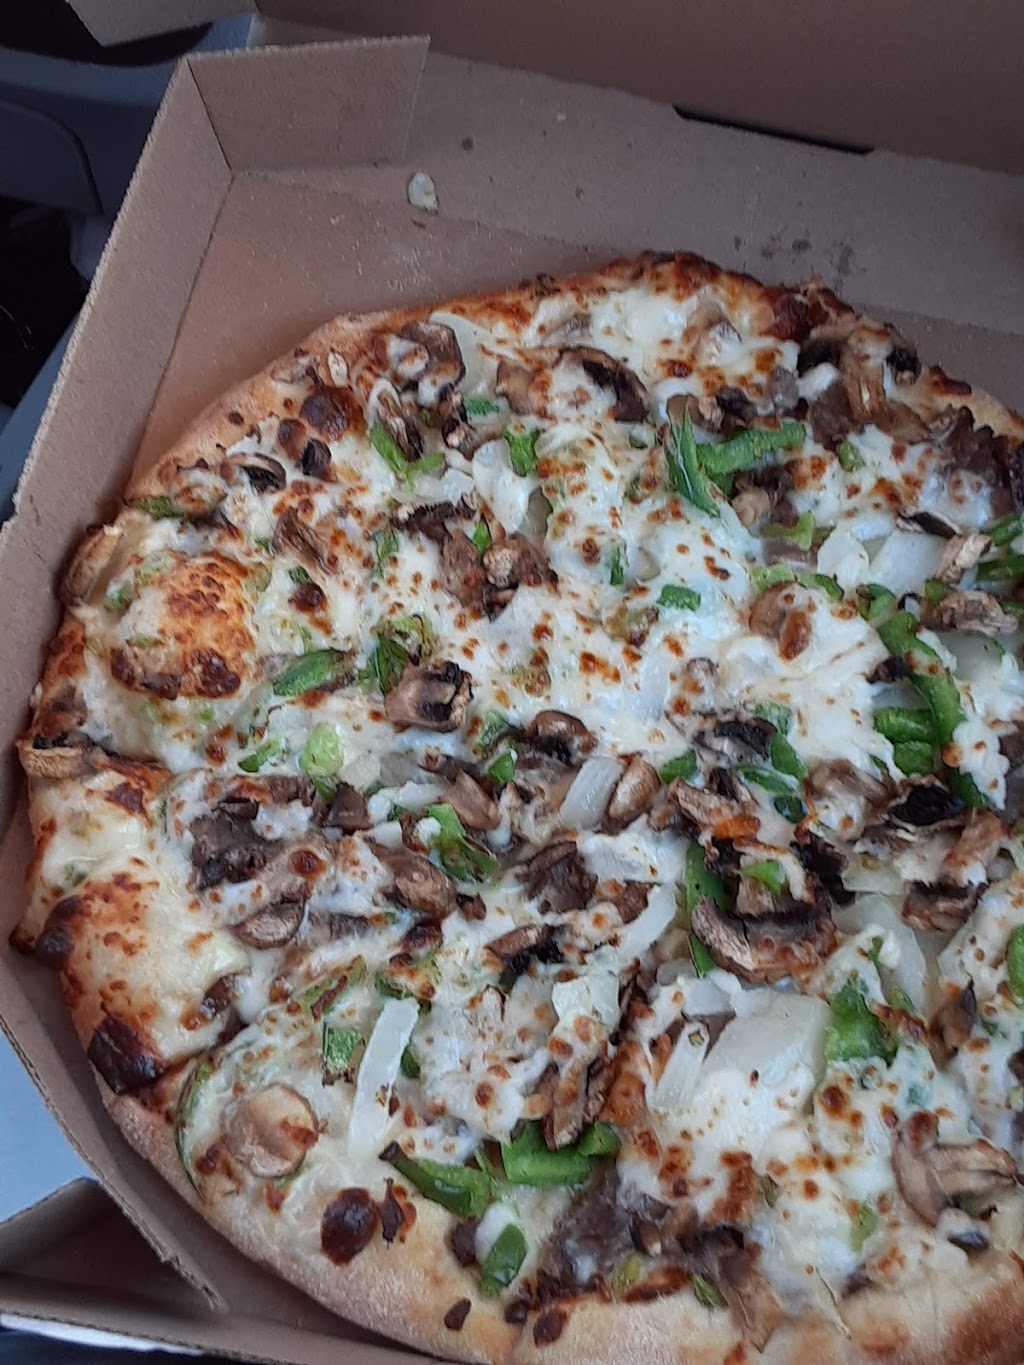 Dominos Pizza | 992 W El Camino Real, Sunnyvale, CA 94087 | Phone: (408) 736-3666